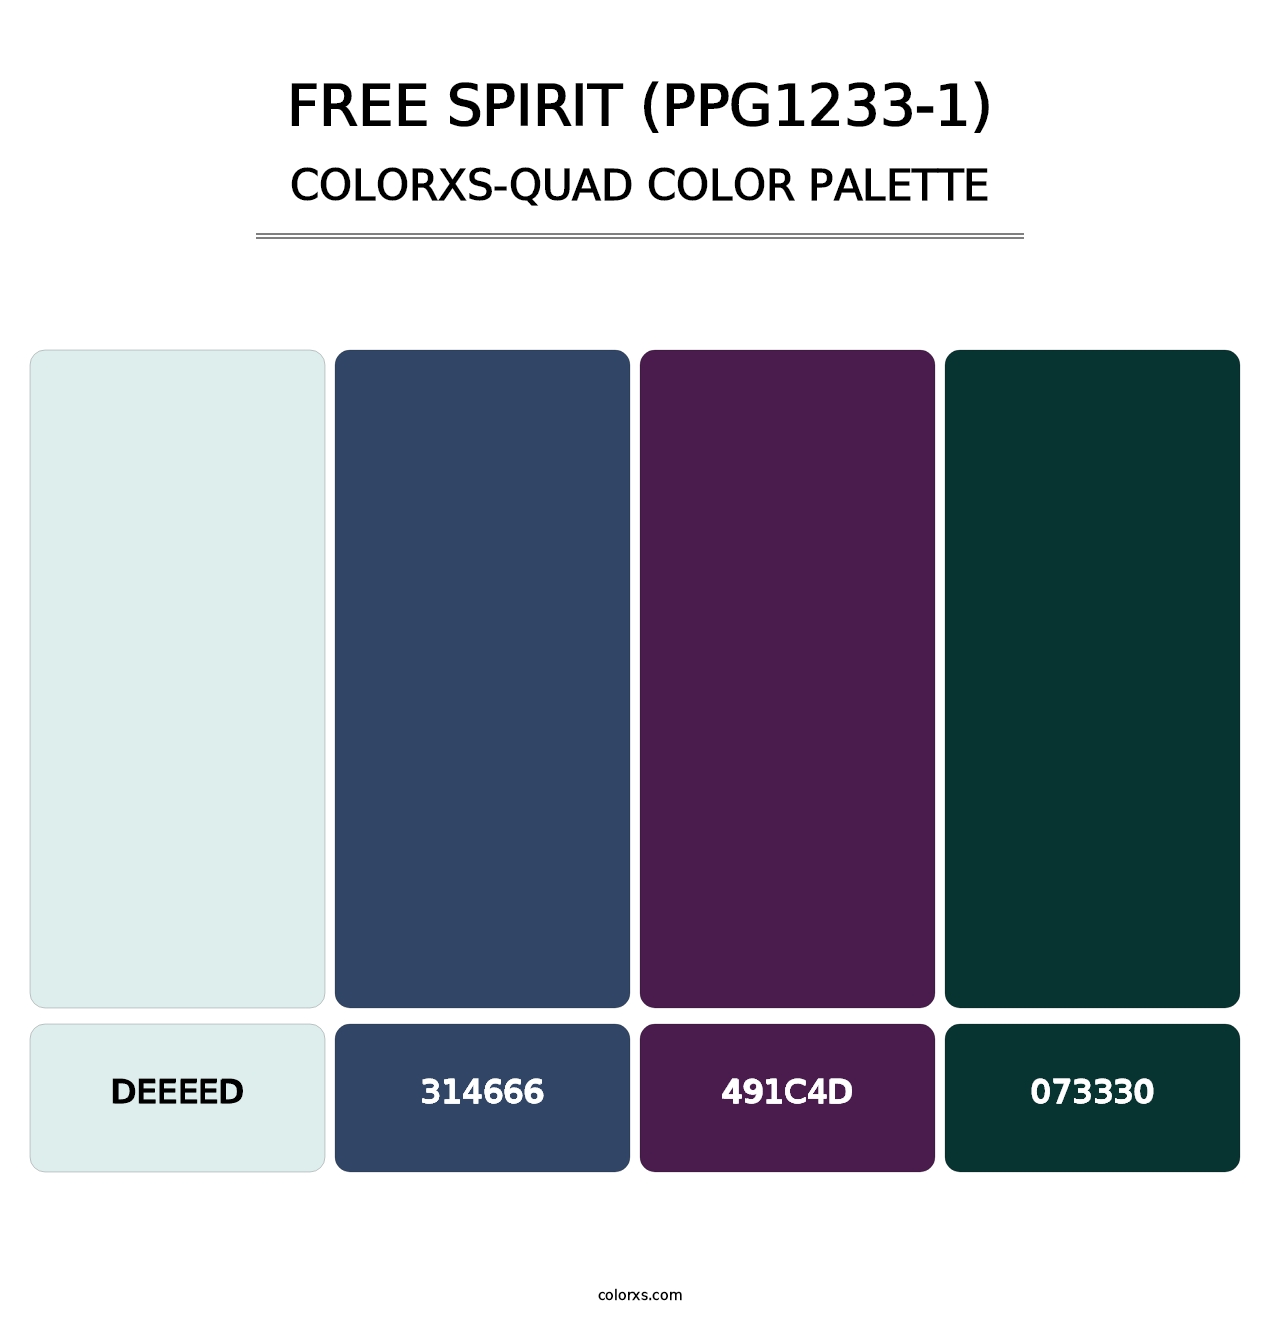 Free Spirit (PPG1233-1) - Colorxs Quad Palette